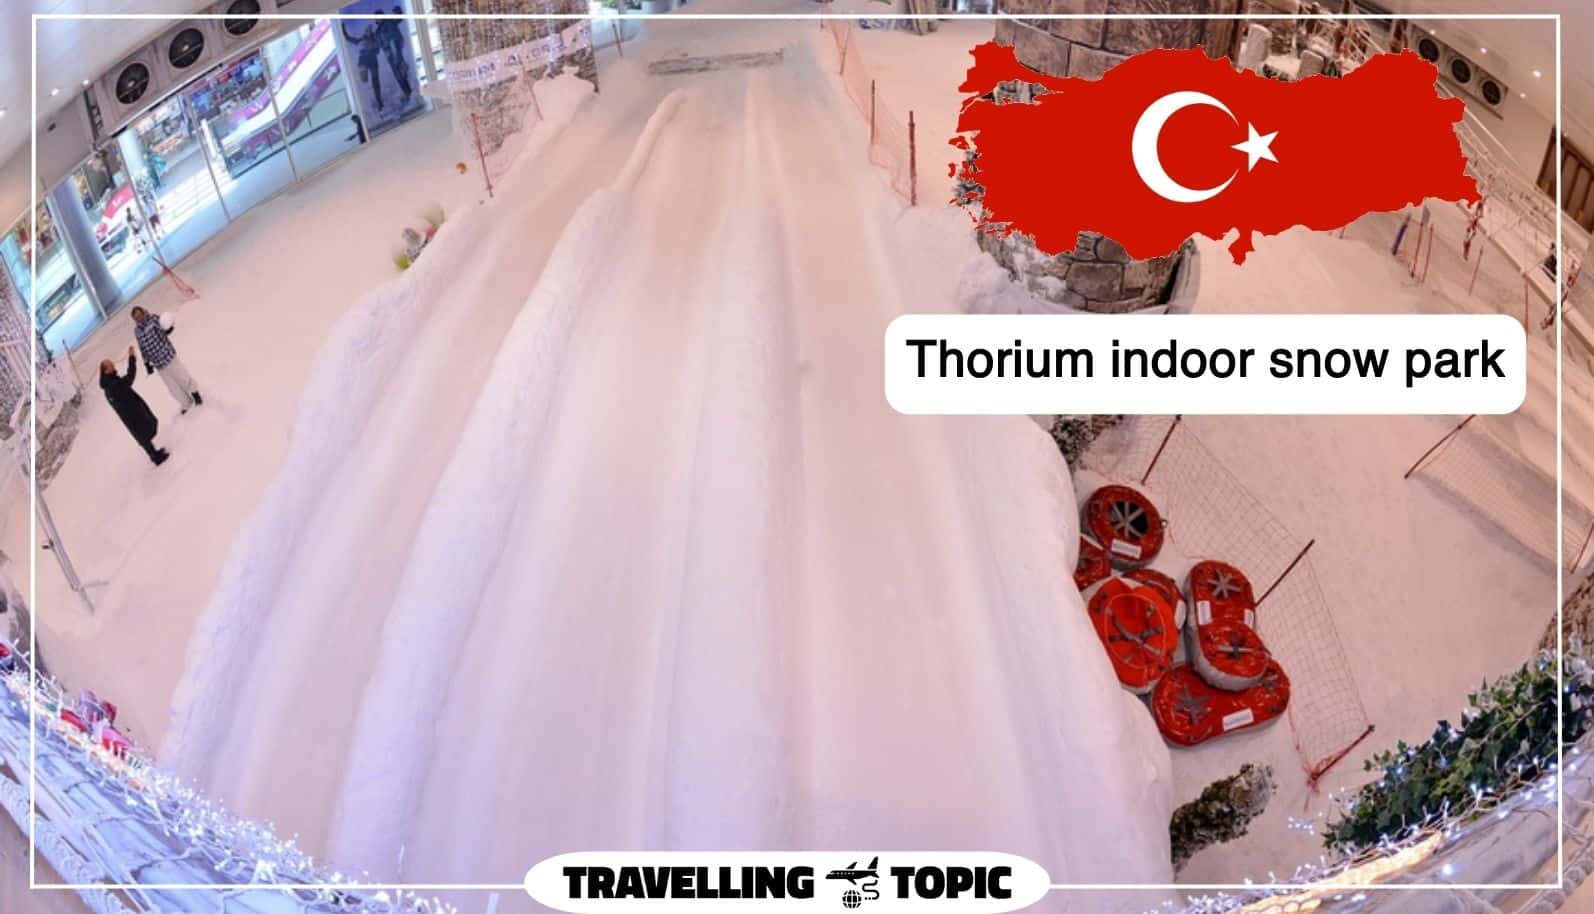 Thorium indoor snow park